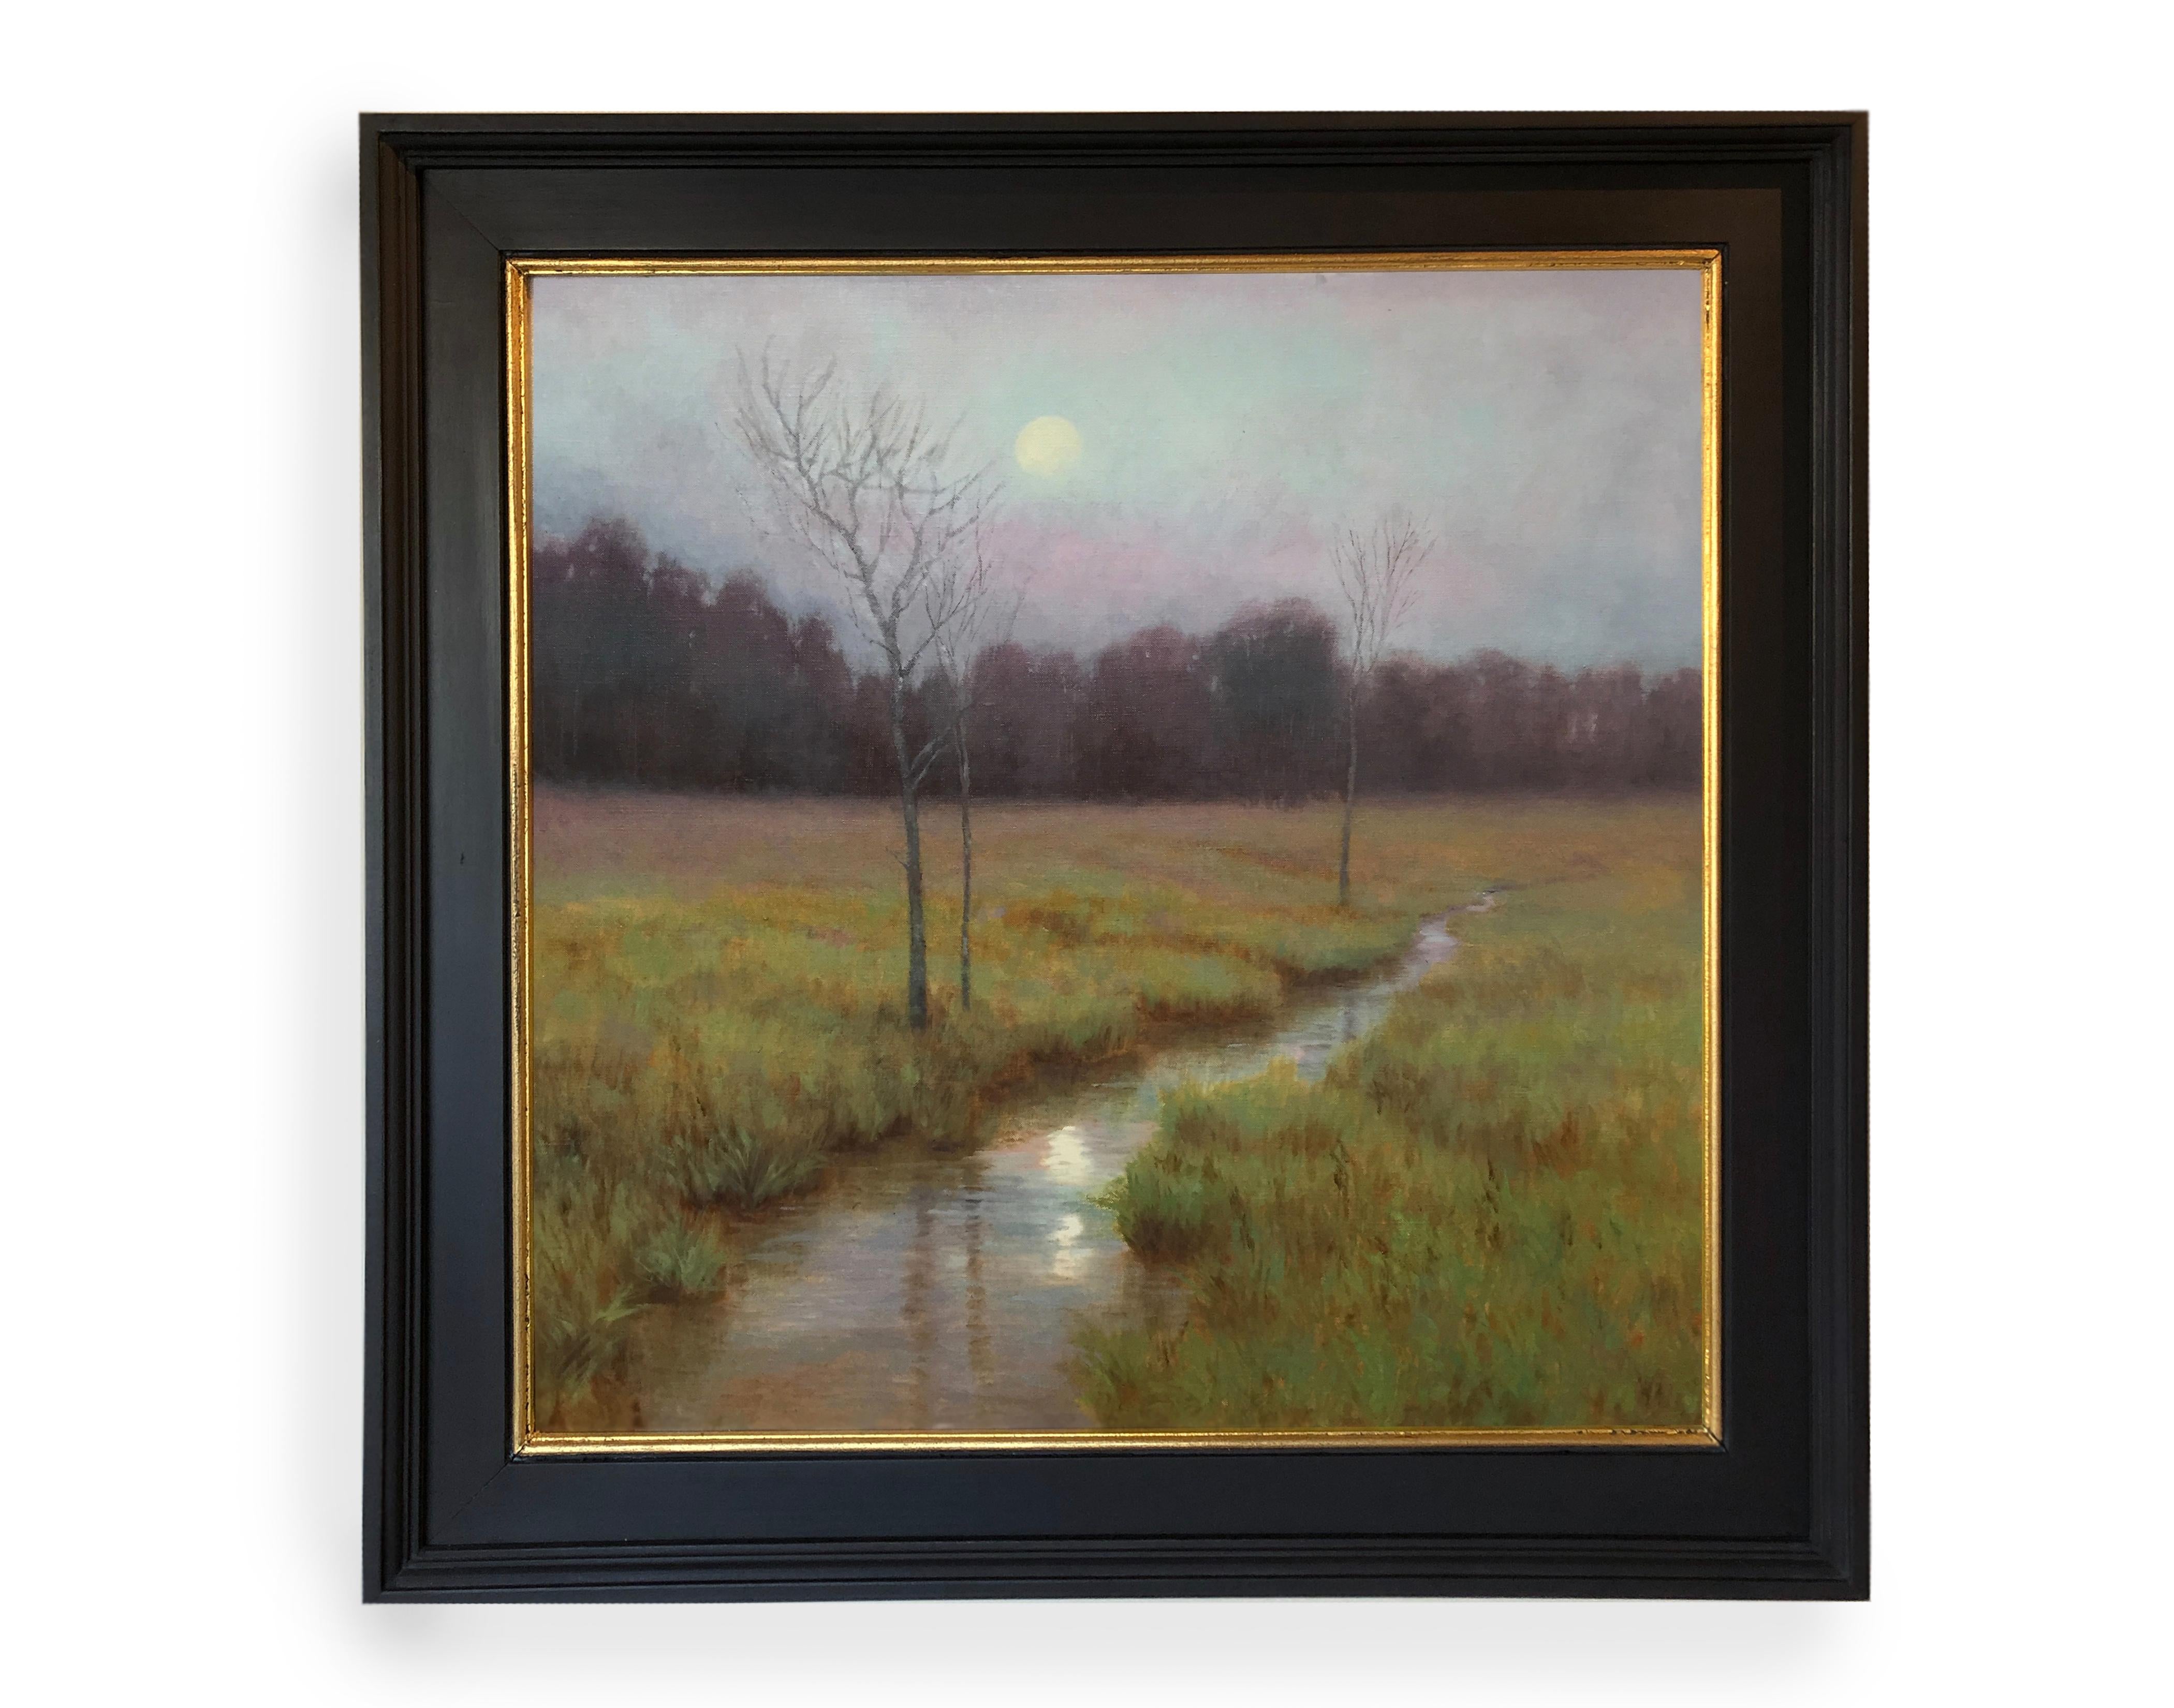 Deborah Paris Landscape Painting - Spring Moonrise (Stream, lush, reflection, cool colors)